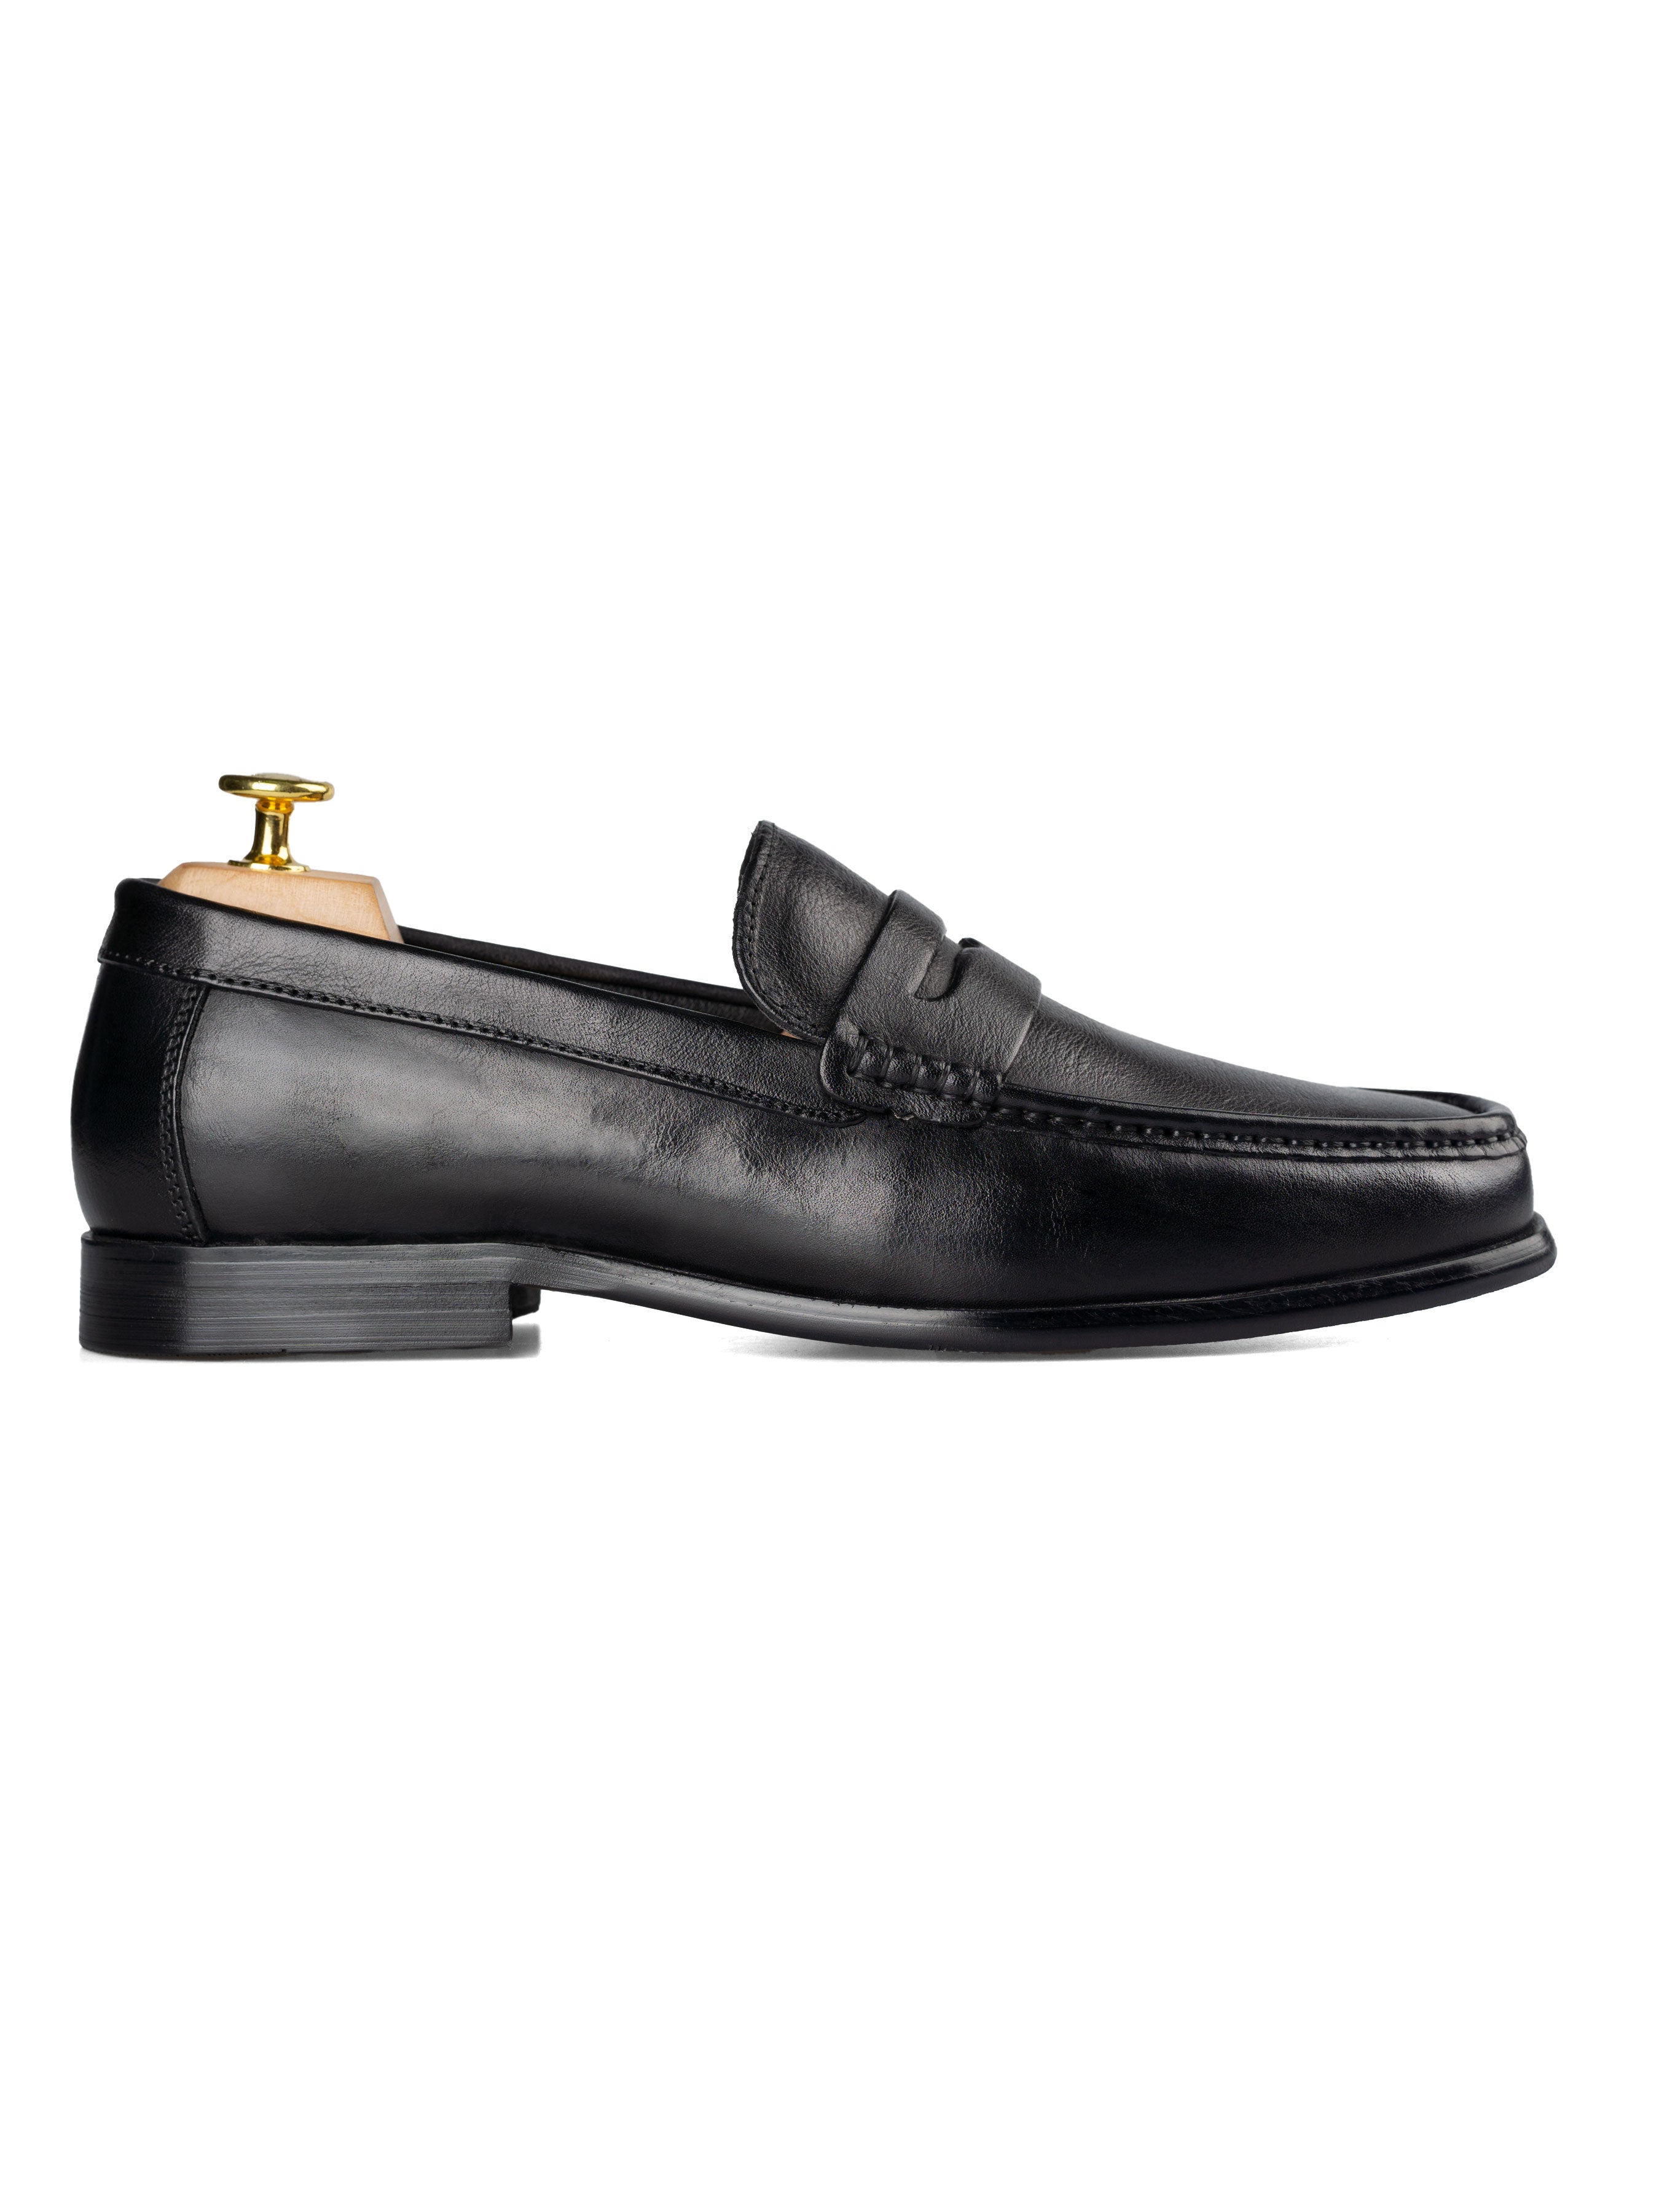 Penny Moccasin Loafer - Solid Black | Zeve Shoes